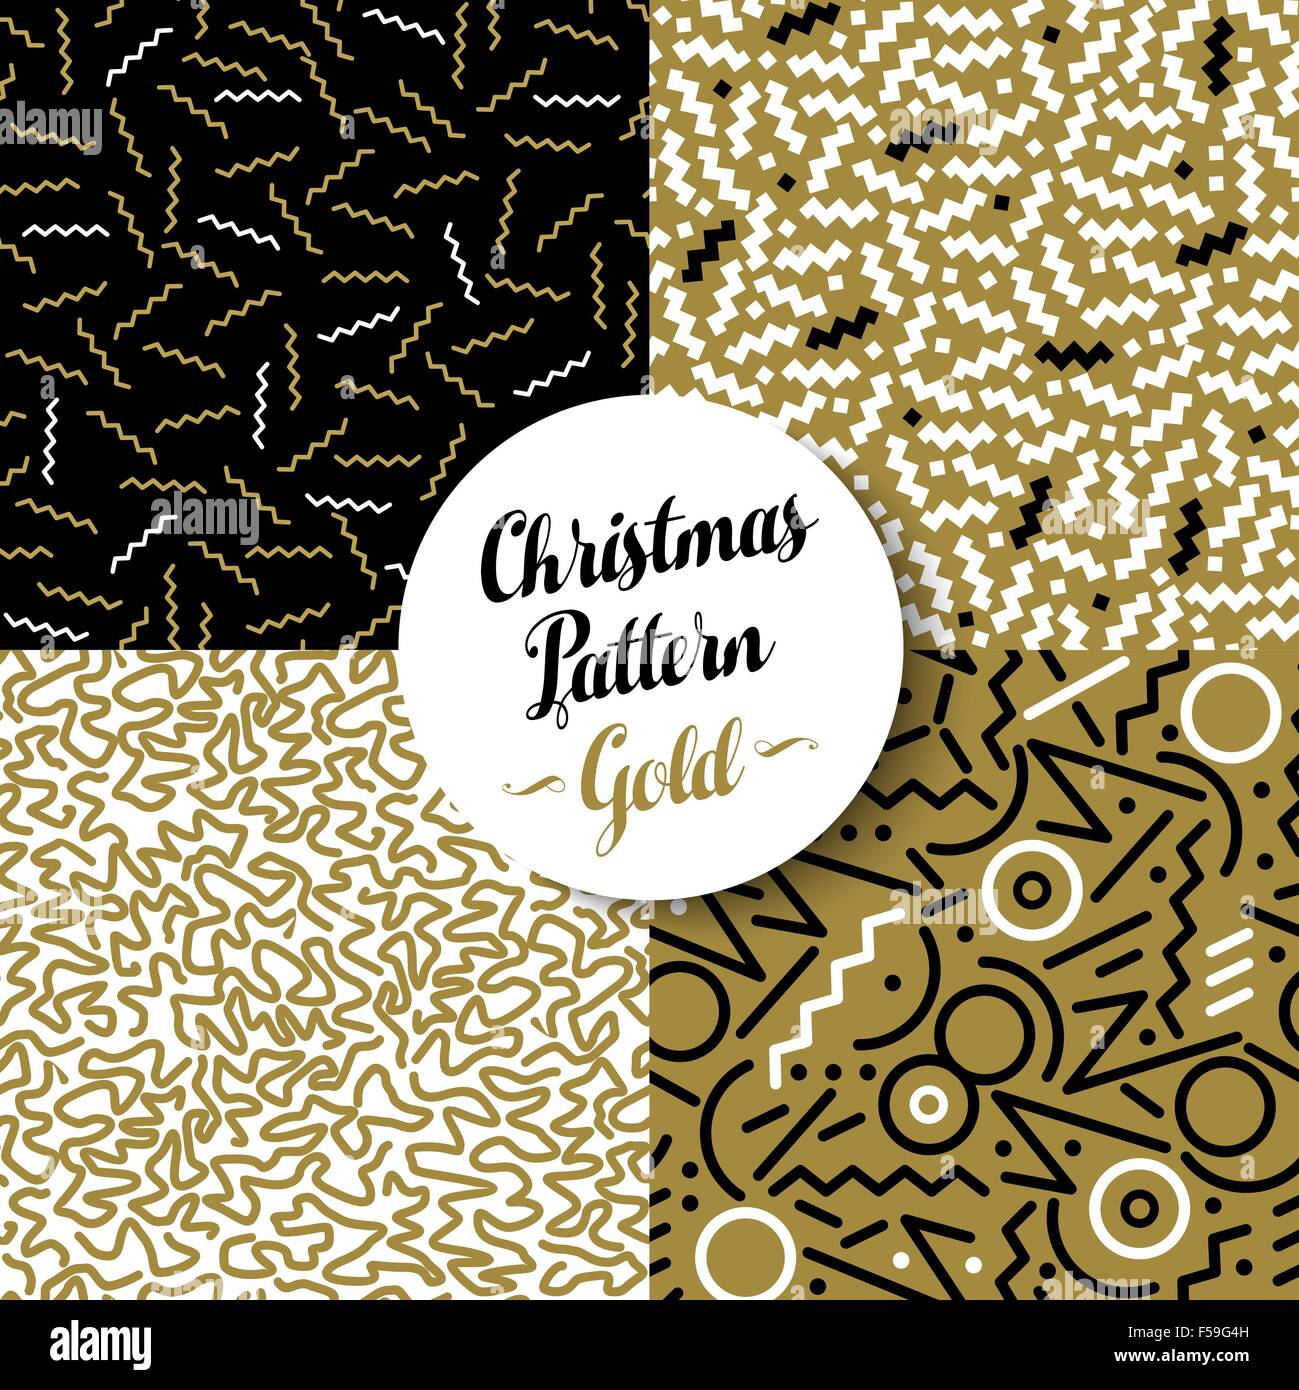 Frohe Weihnachten Musterdesign setzen ausgefallene goldene Geometrie Designs in 80er Jahre Retro-Stil. Ideal für Weihnachten Grußkarte oder web Stock Vektor